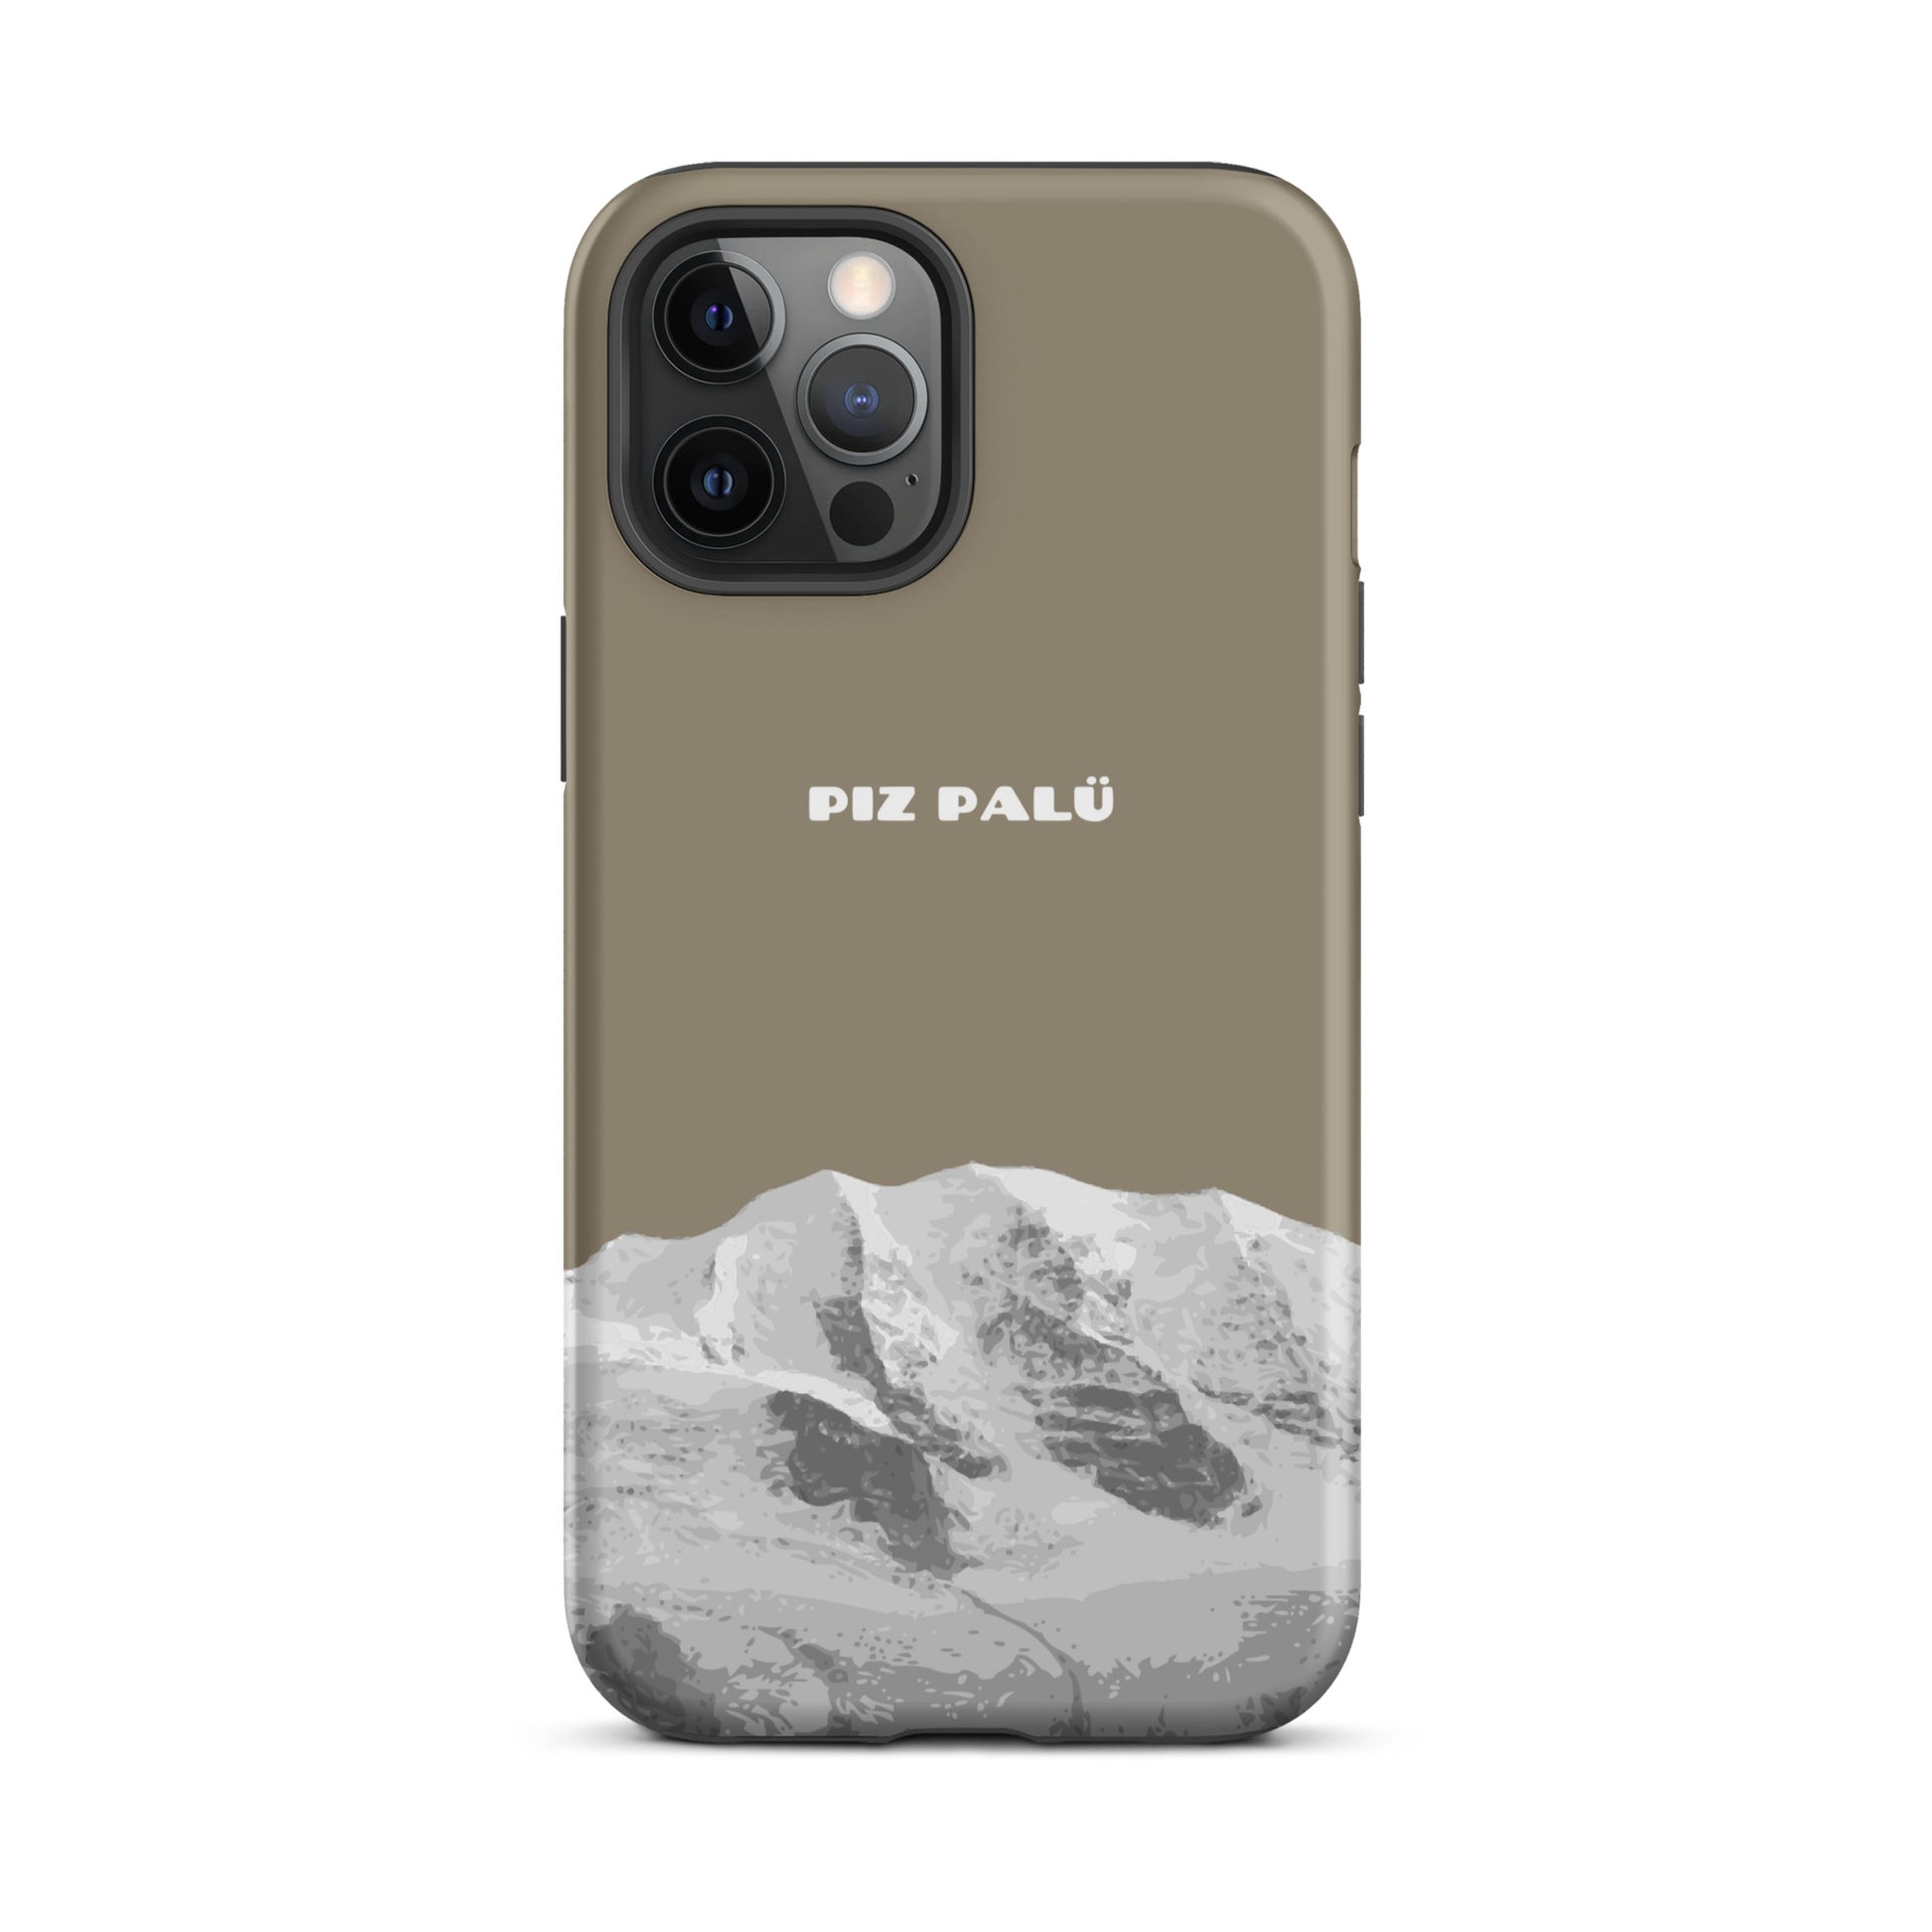 Hülle für das iPhone 12 Pro Max von Apple in der Farbe Graubrau, dass den Piz Palü in Graubünden zeigt.